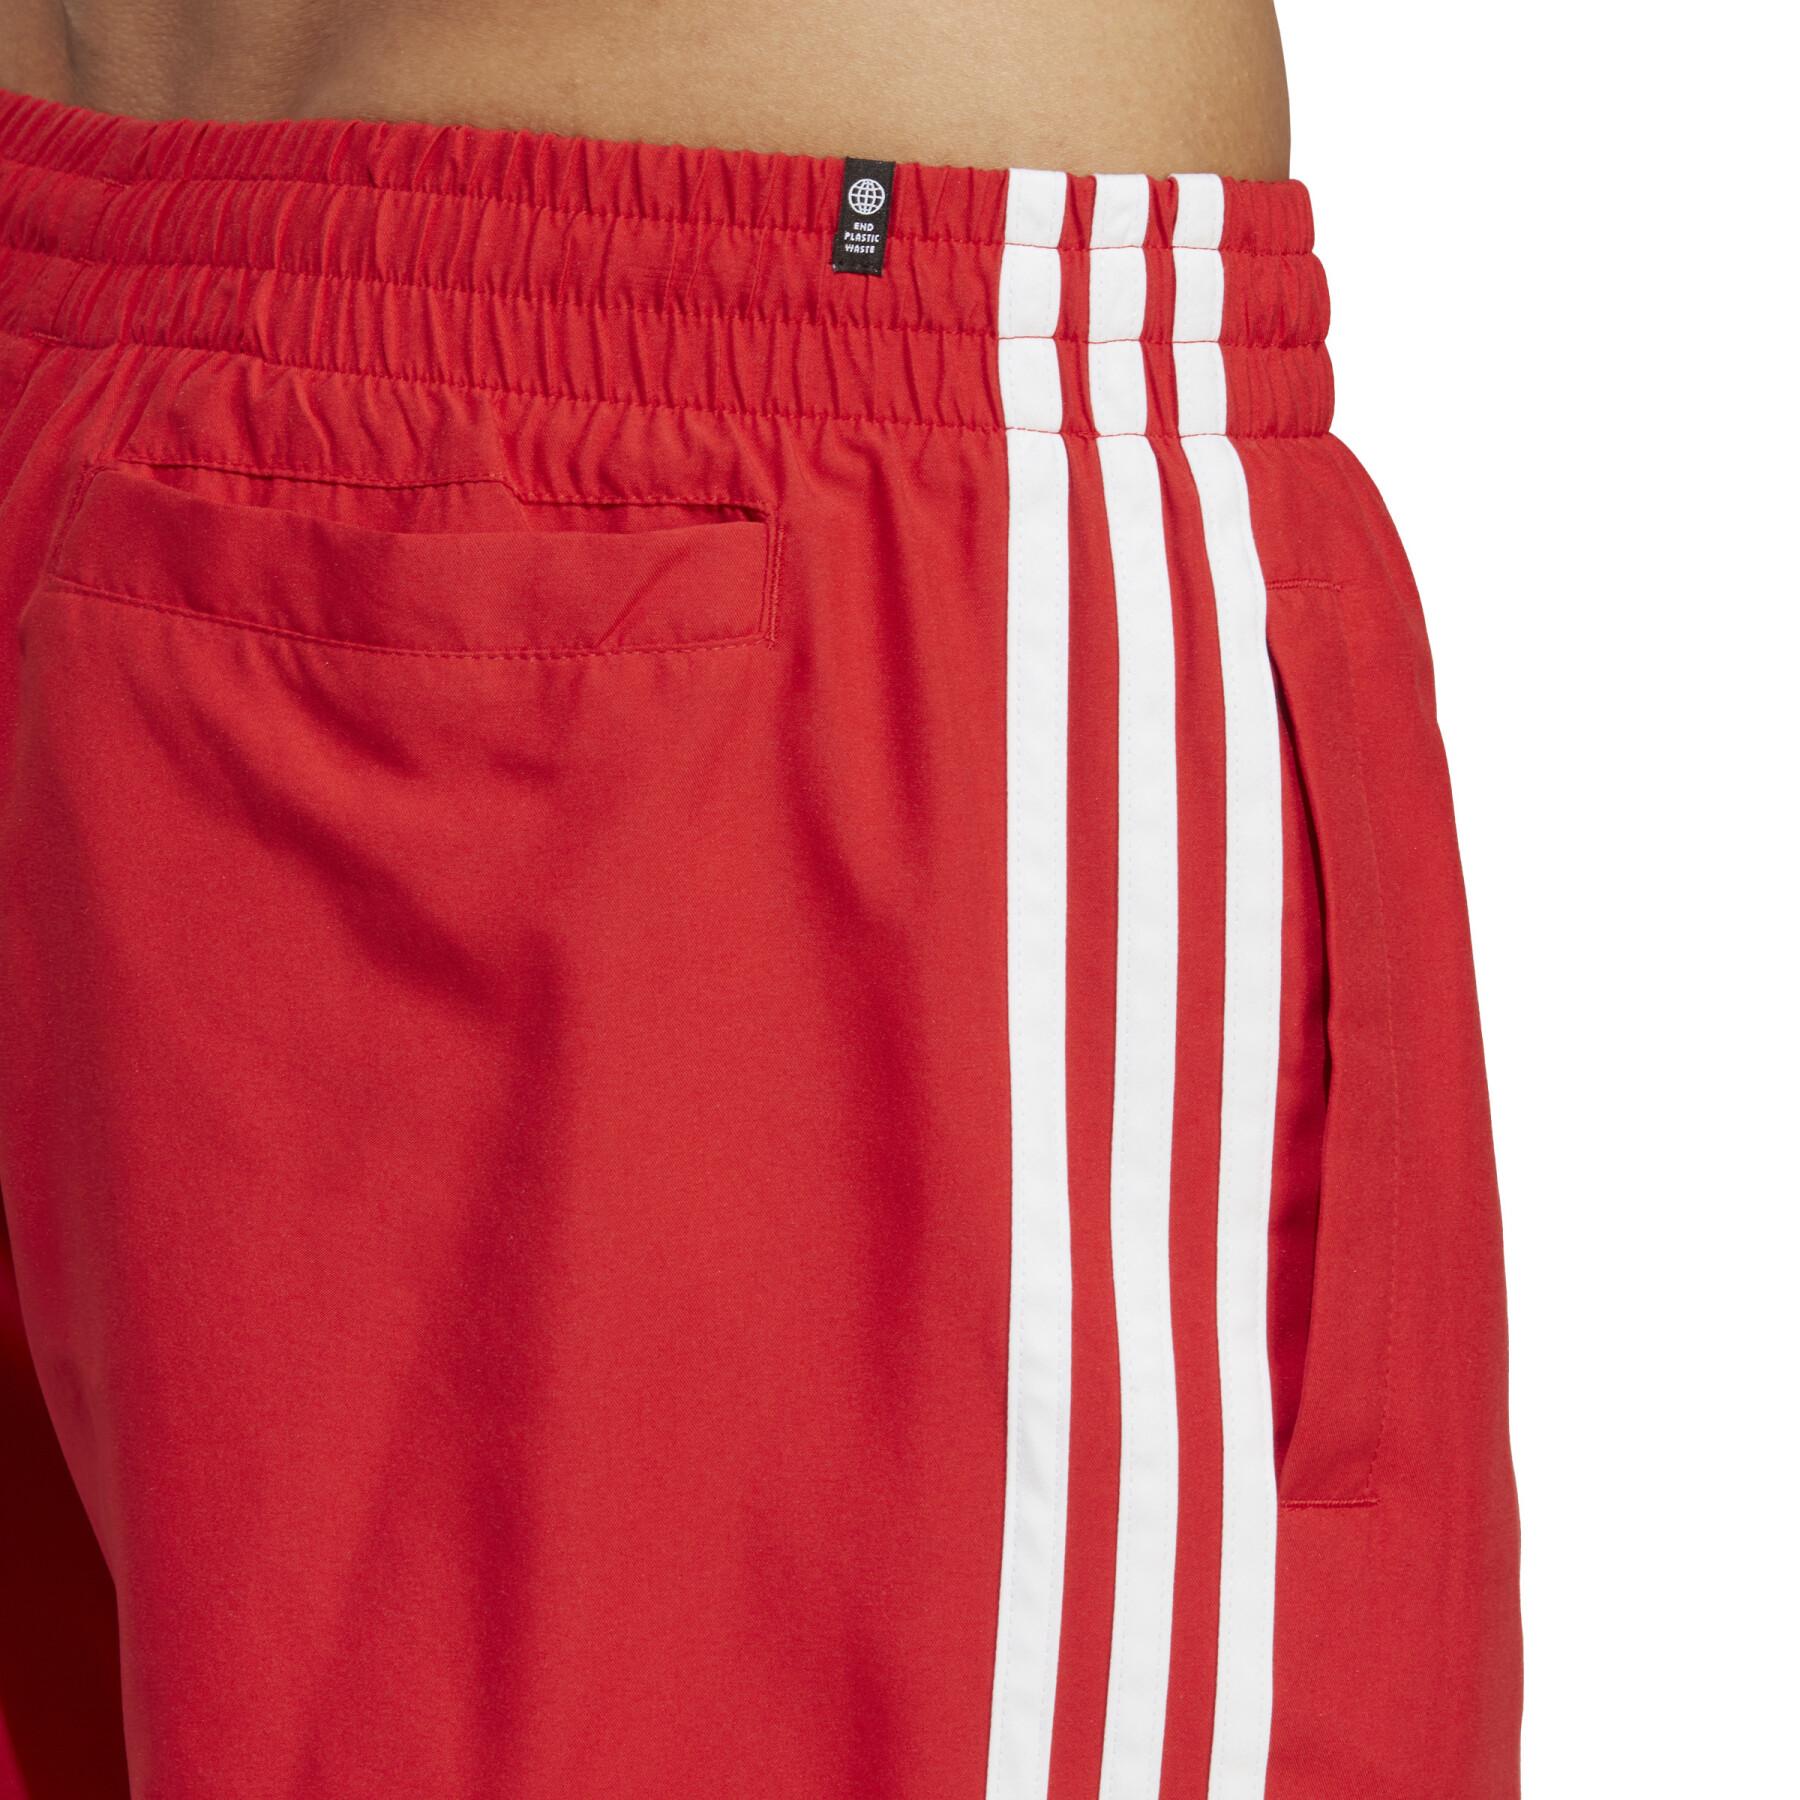 Pantalones cortos de baño adidas Originals Adicolor 3-Stripes